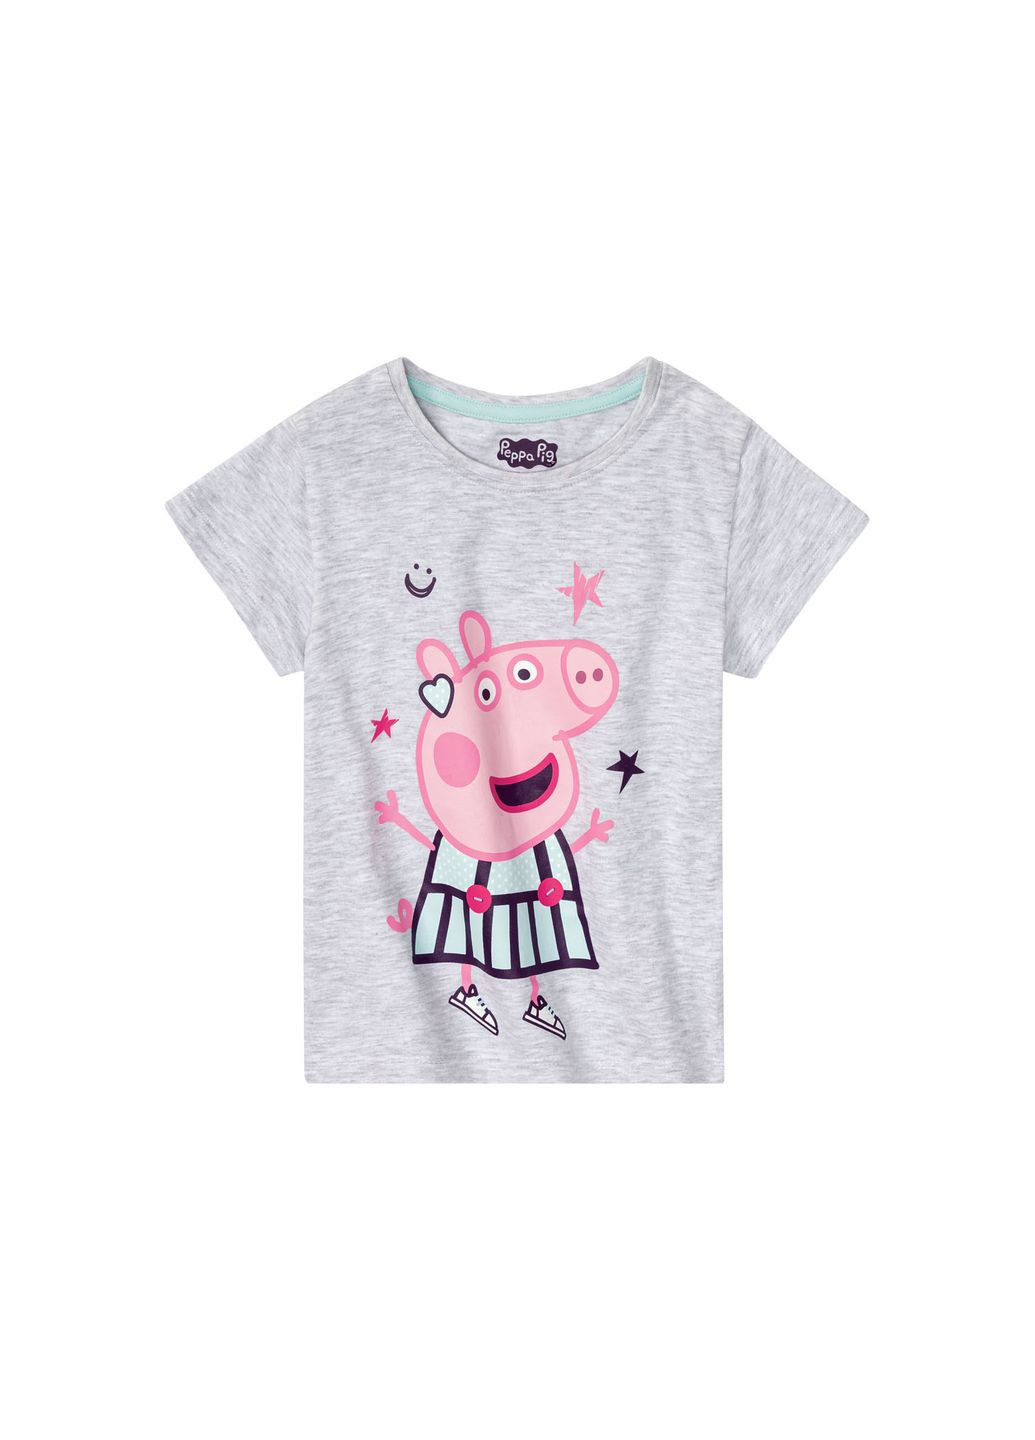 Серая всесезон пижама летняя для девочки футболка + шорты Lupilu